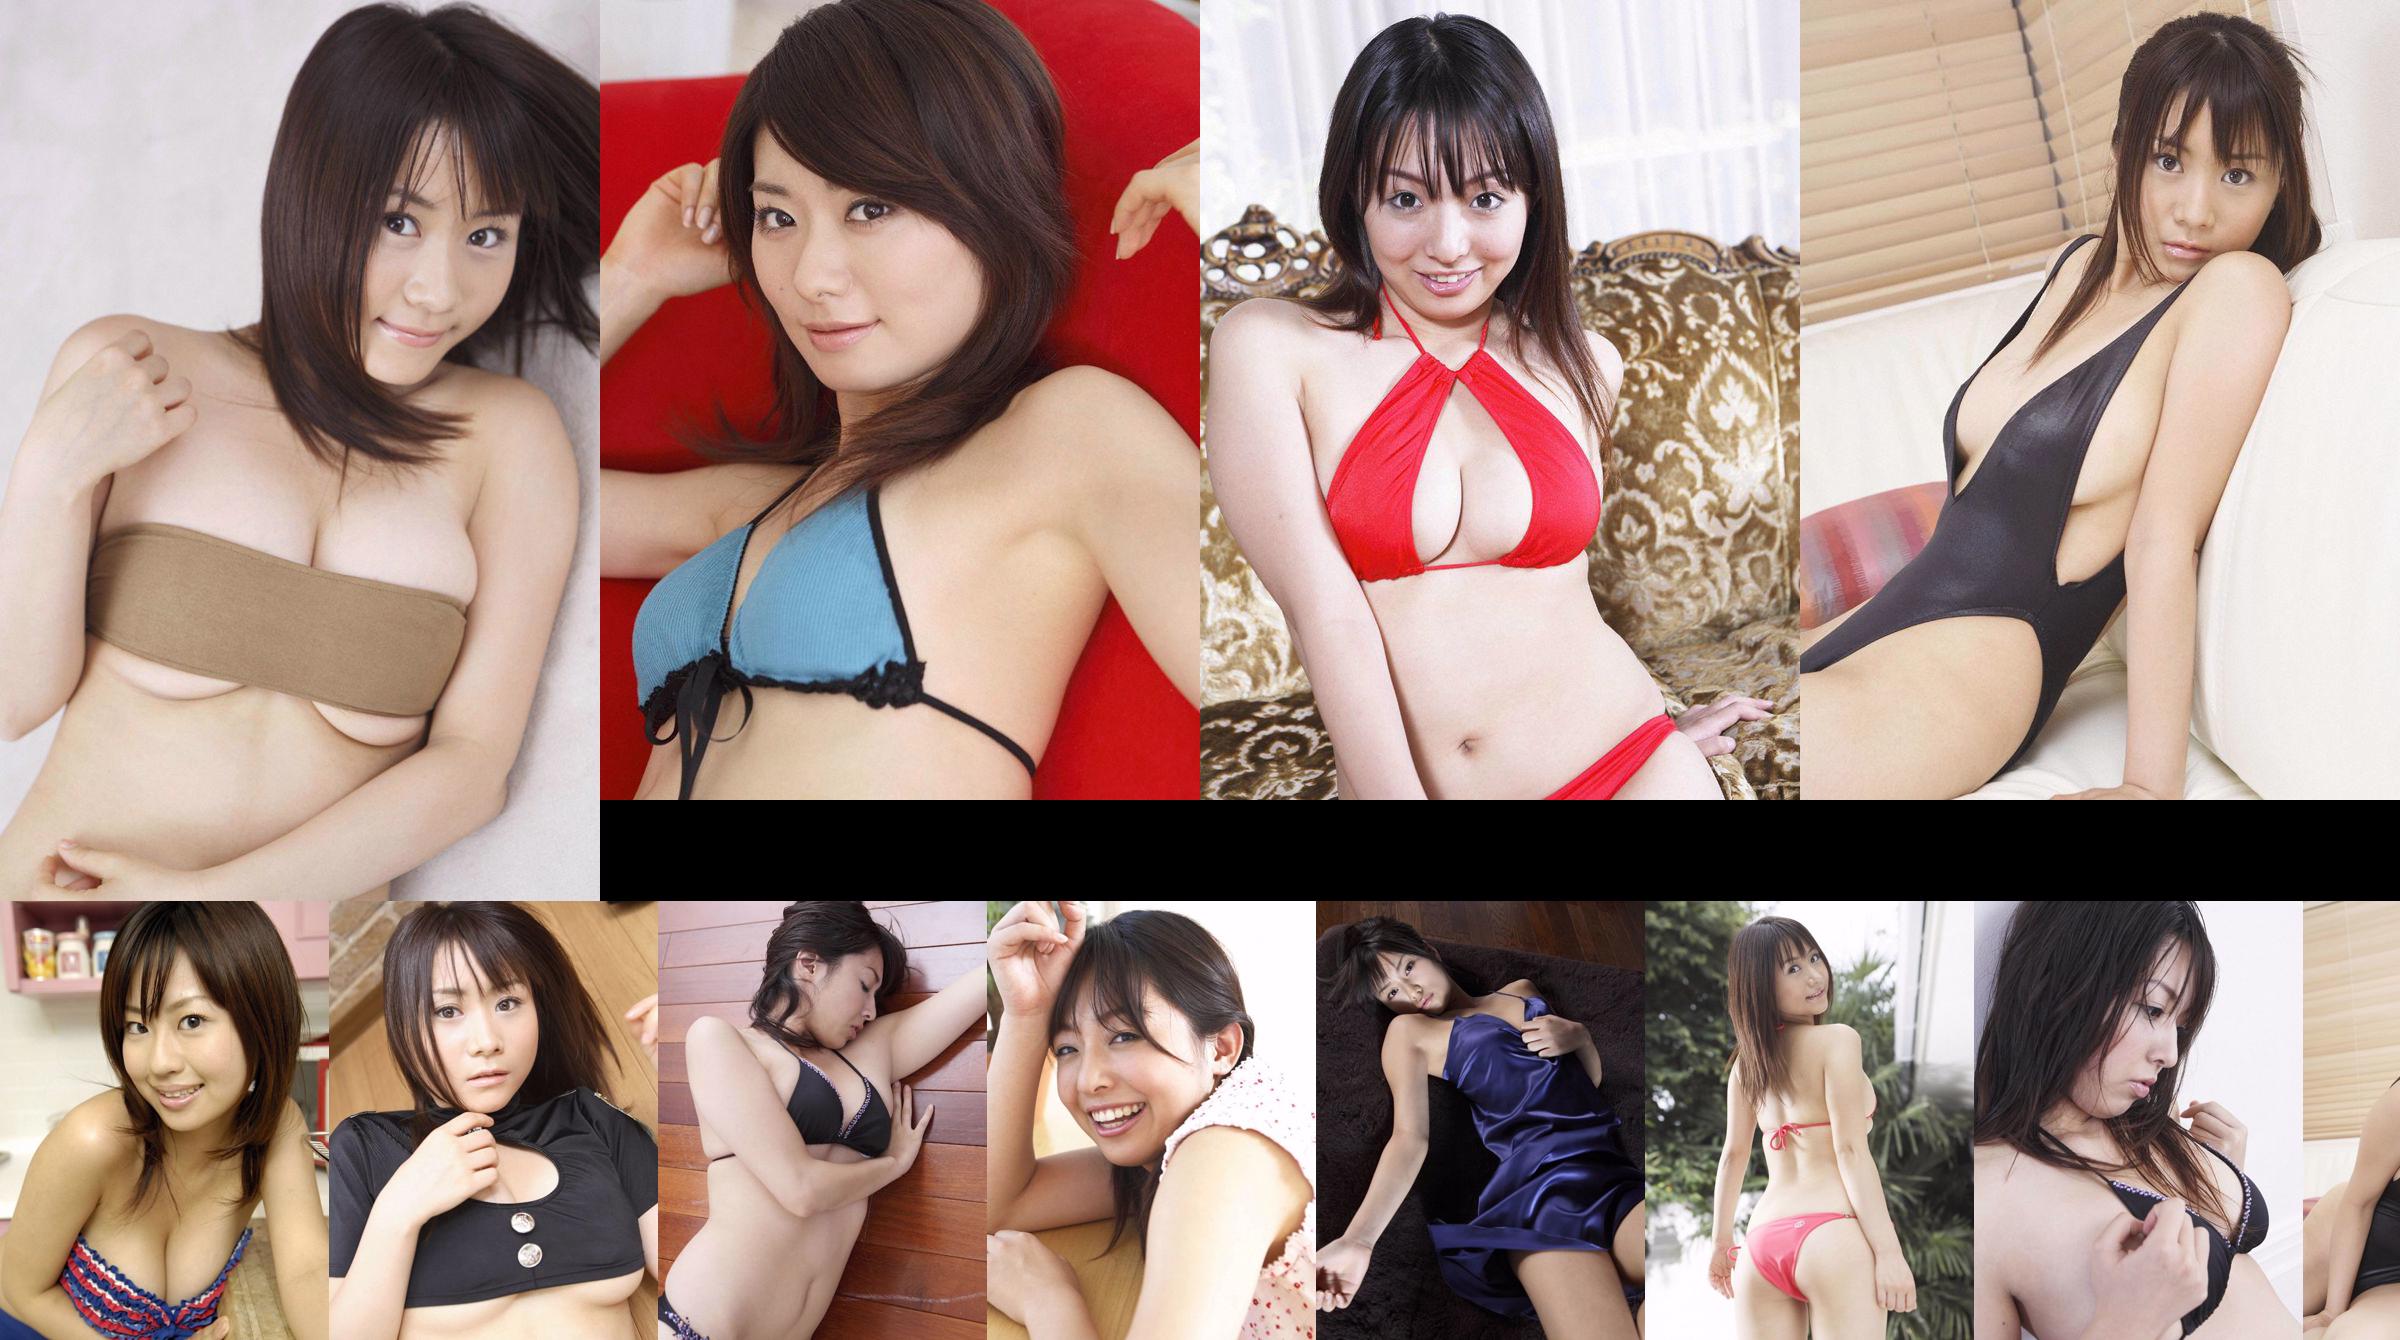 [Wanibooks] NO.37 Ai Arakawa, Hitomi Kaikawa, Hitomi Kitamura, Naomi I, Chii Matsuda Photo Collection No.1bbc06 Page 1